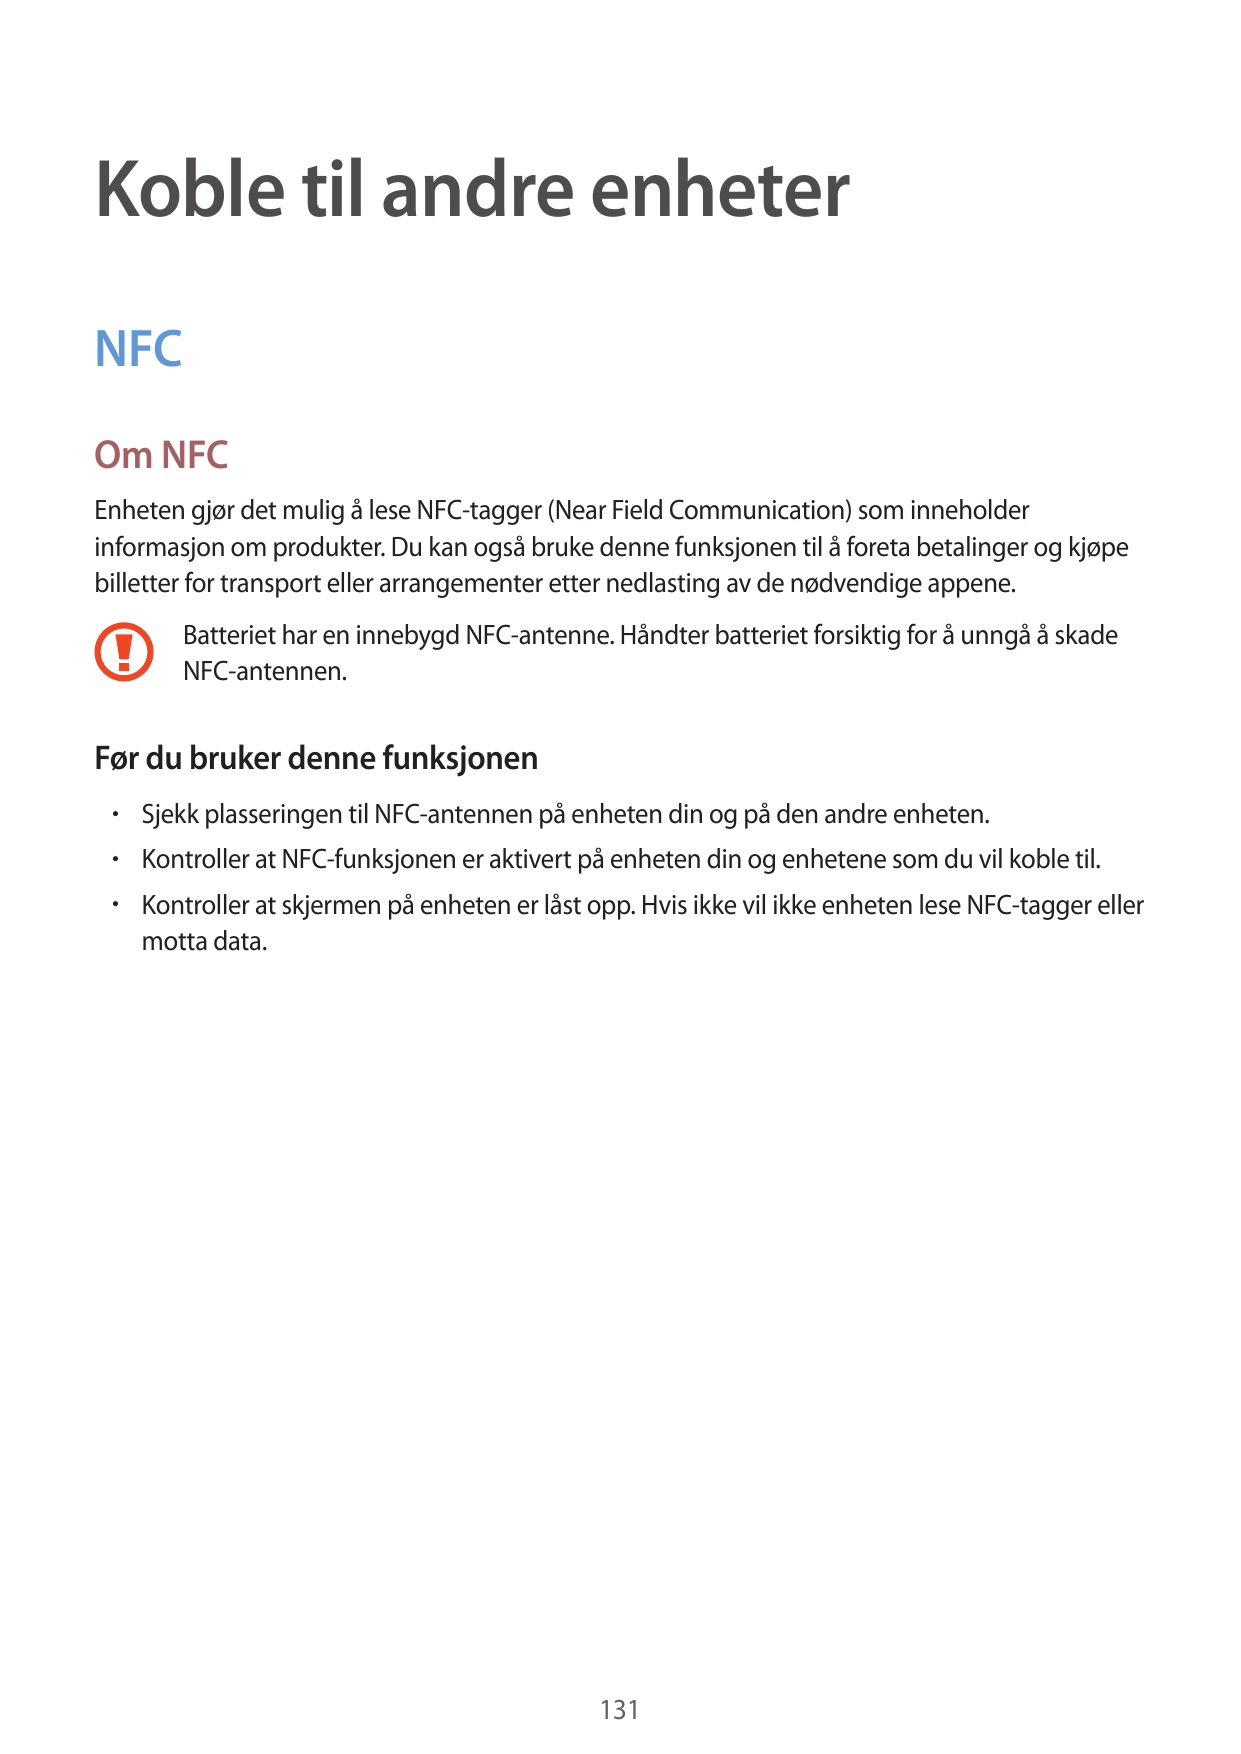 Koble til andre enheterNFCOm NFCEnheten gjør det mulig å lese NFC-tagger (Near Field Communication) som inneholderinformasjon om